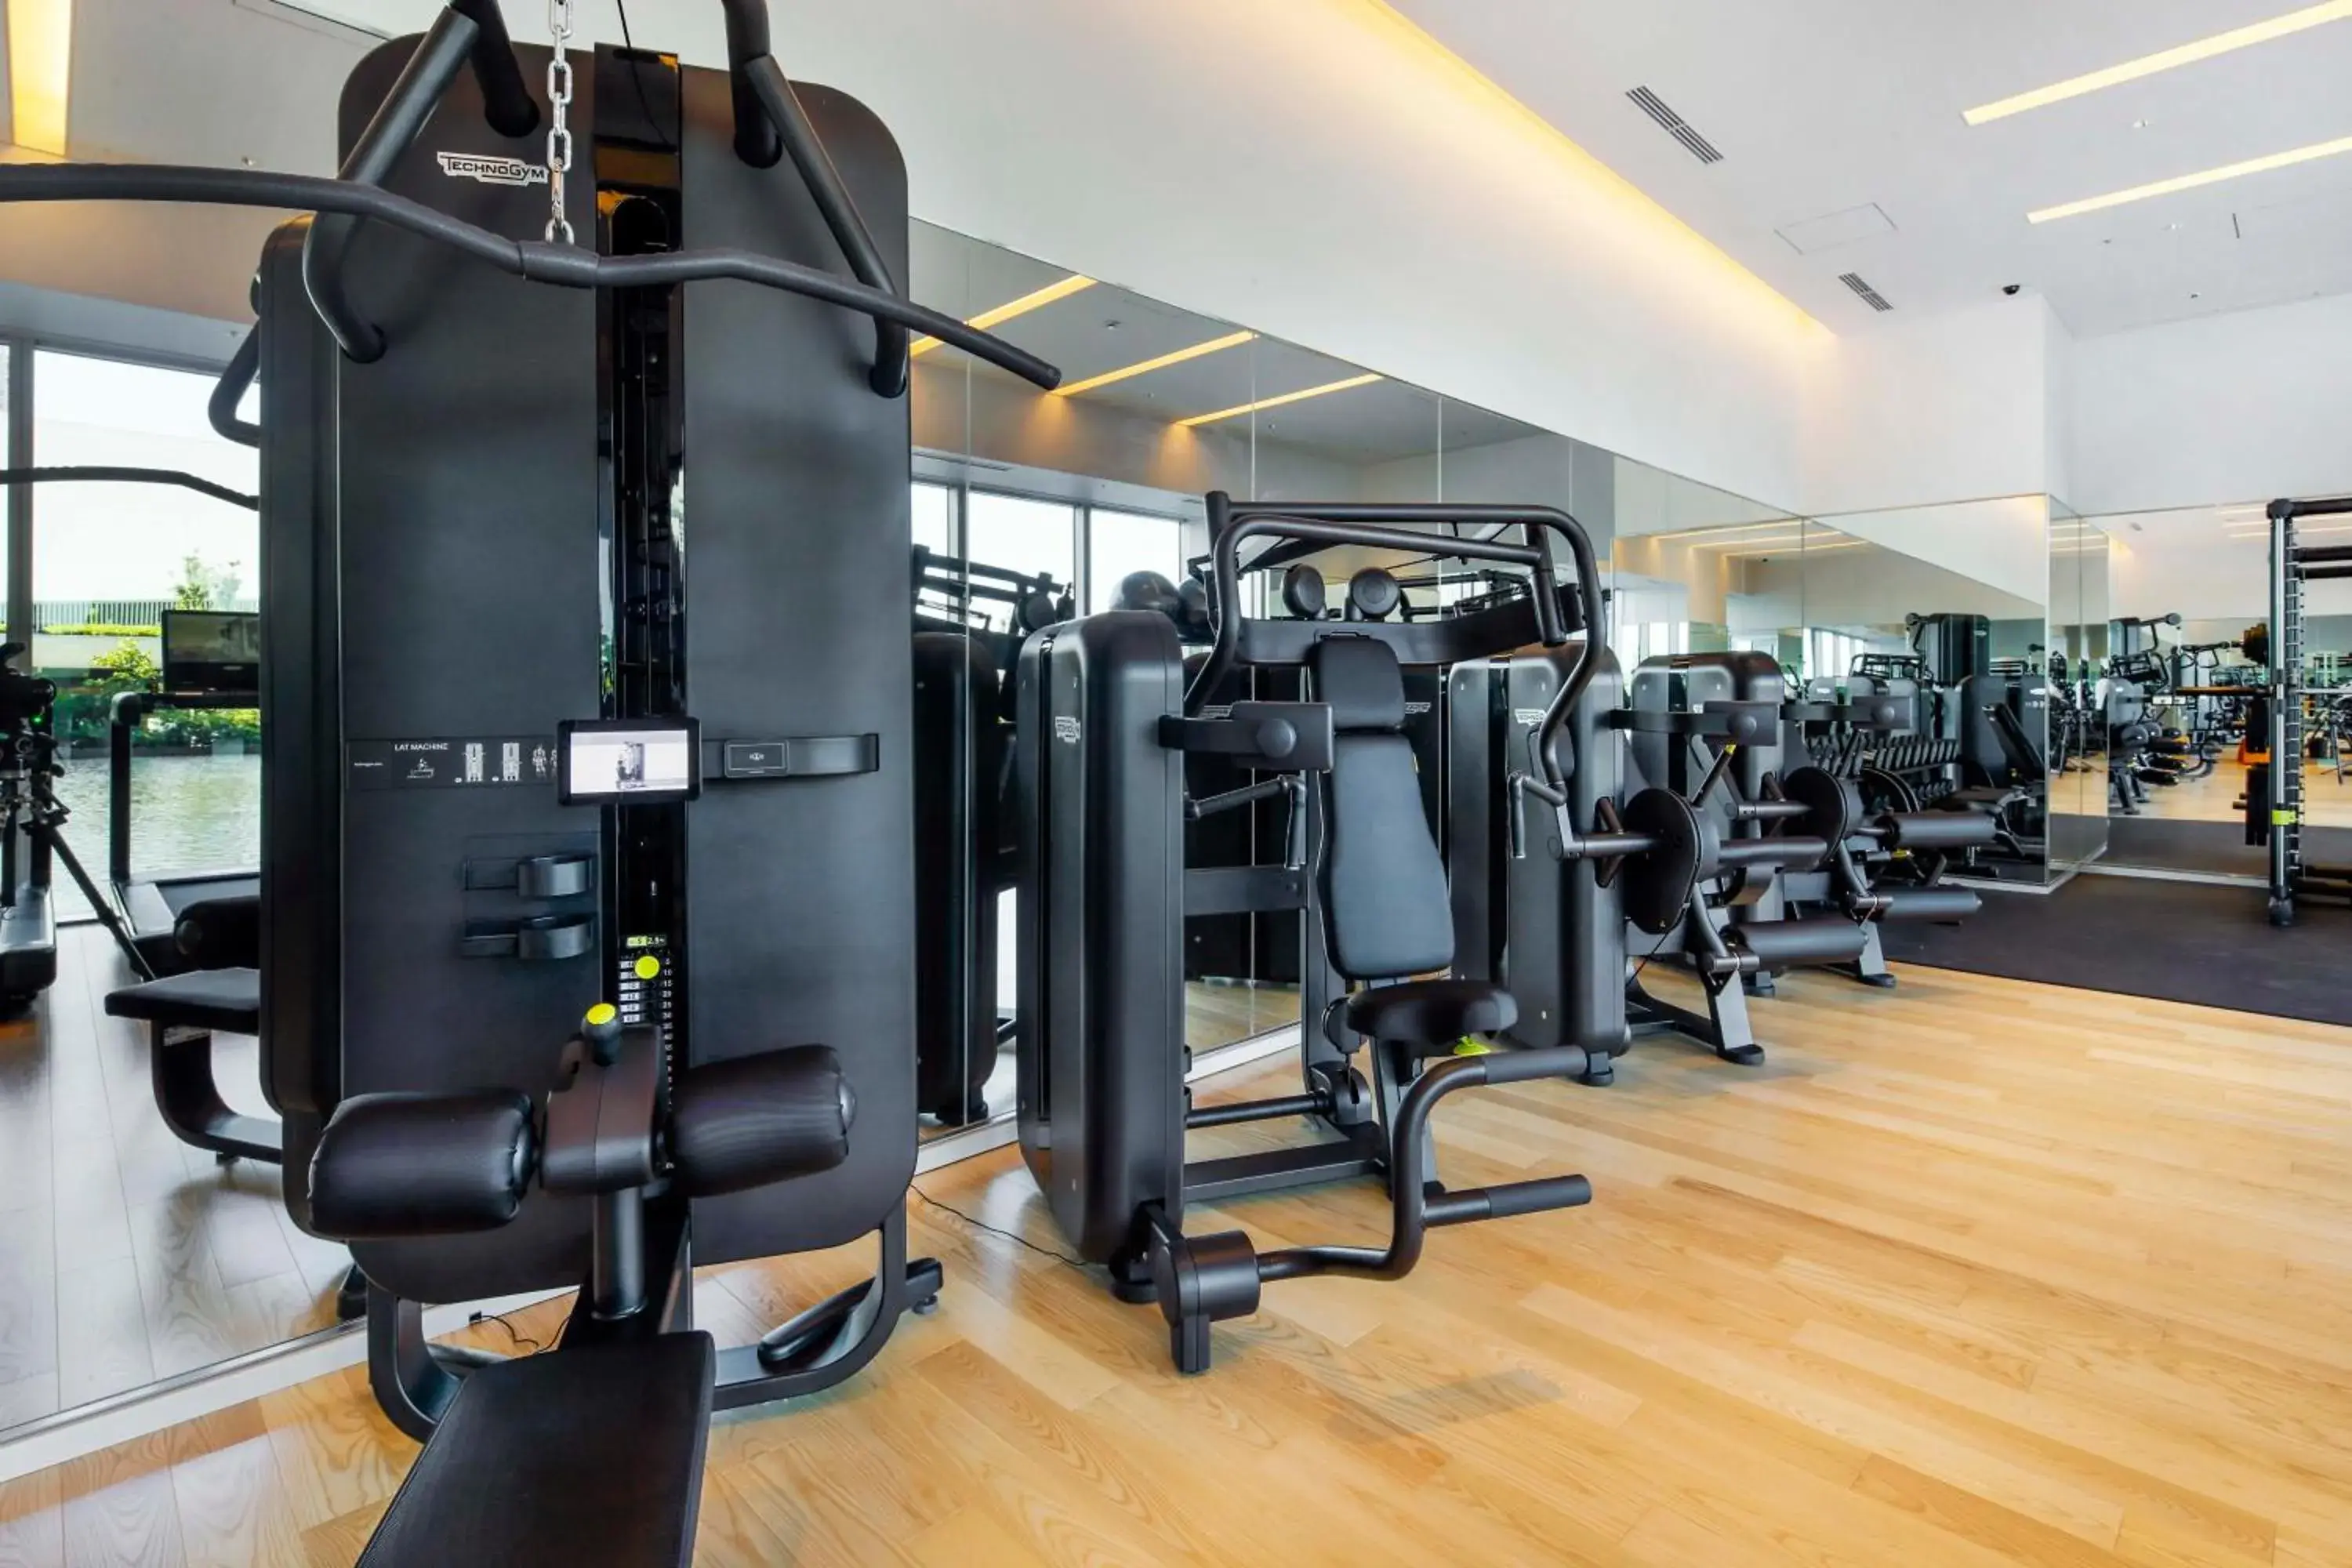 Fitness centre/facilities, Fitness Center/Facilities in The Kahala Hotel & Resort Yokohama